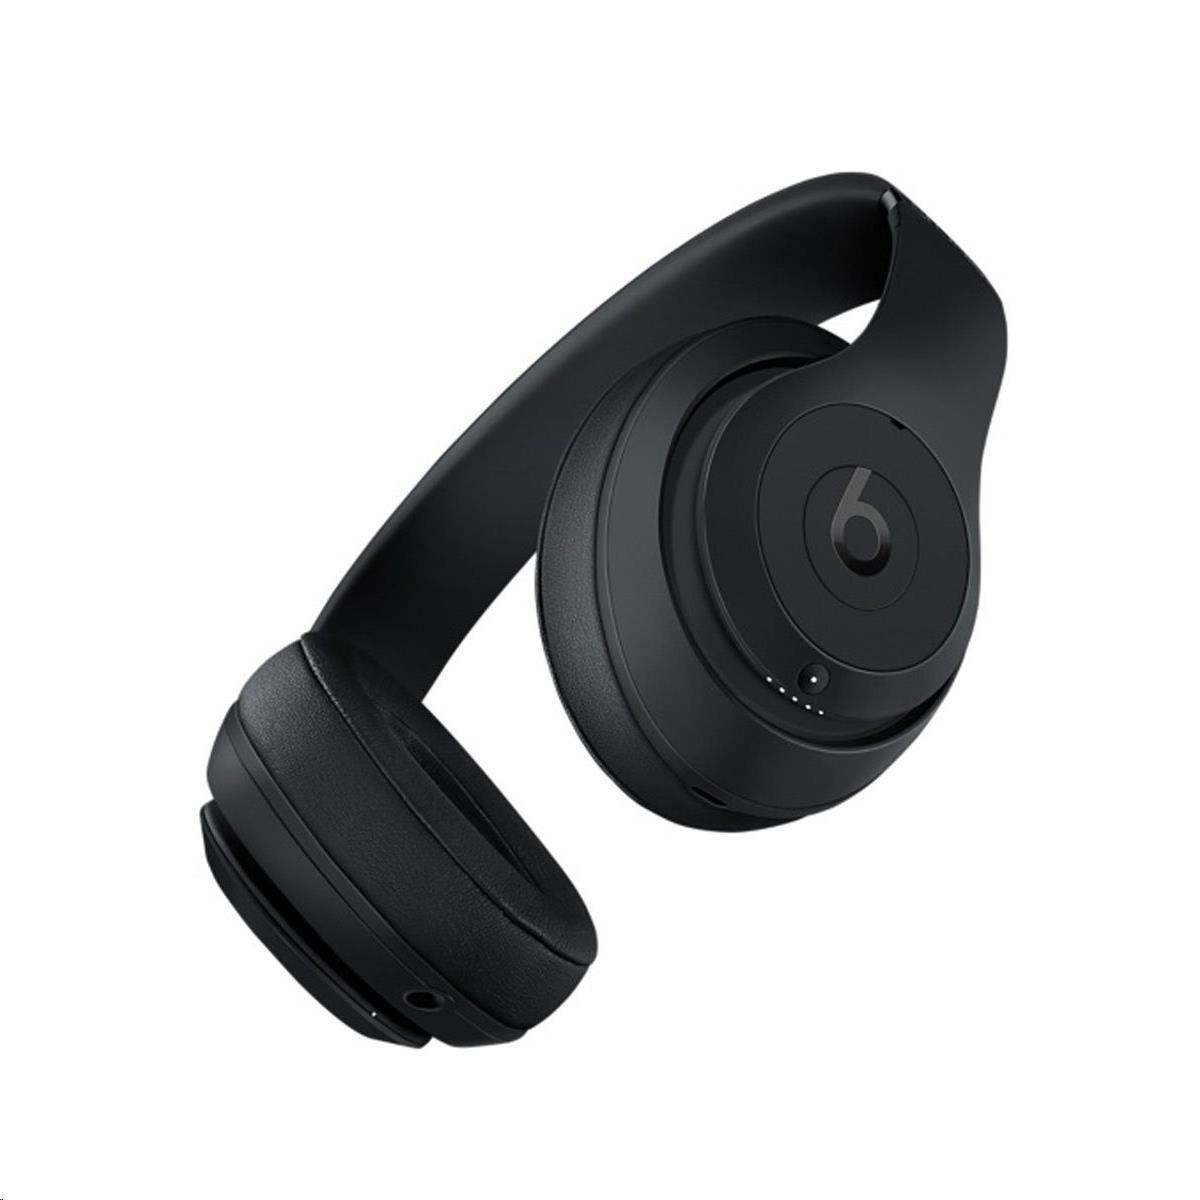 Beats Studio3 Wireless Over-Ear Headphones - Matte Black3 